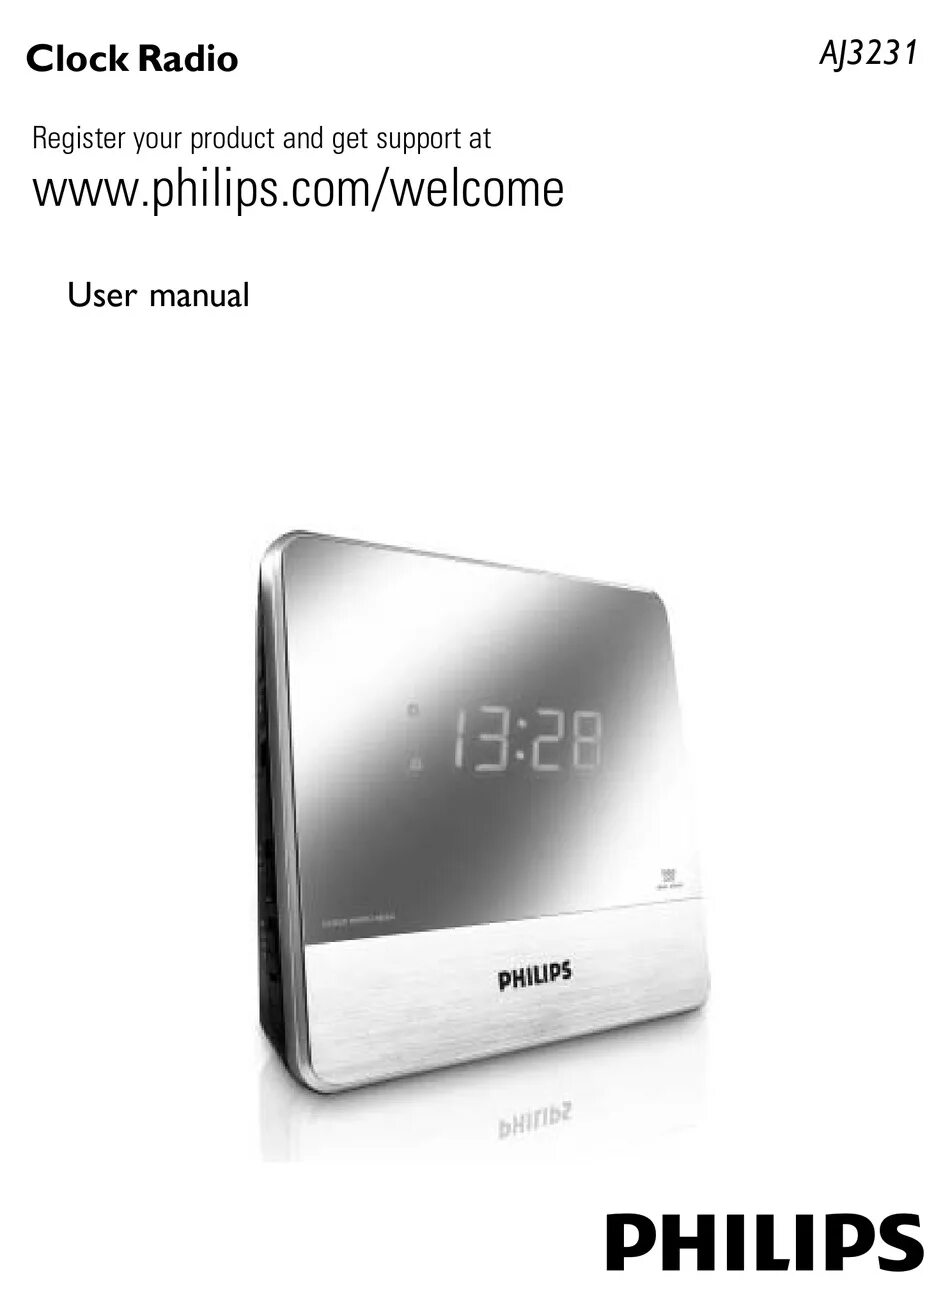 Philips Clock Radio aj3231. Philips AJ 3231. Philips aj3231/12. Радиоприемник Philips aj3231 12. Руководство филипс